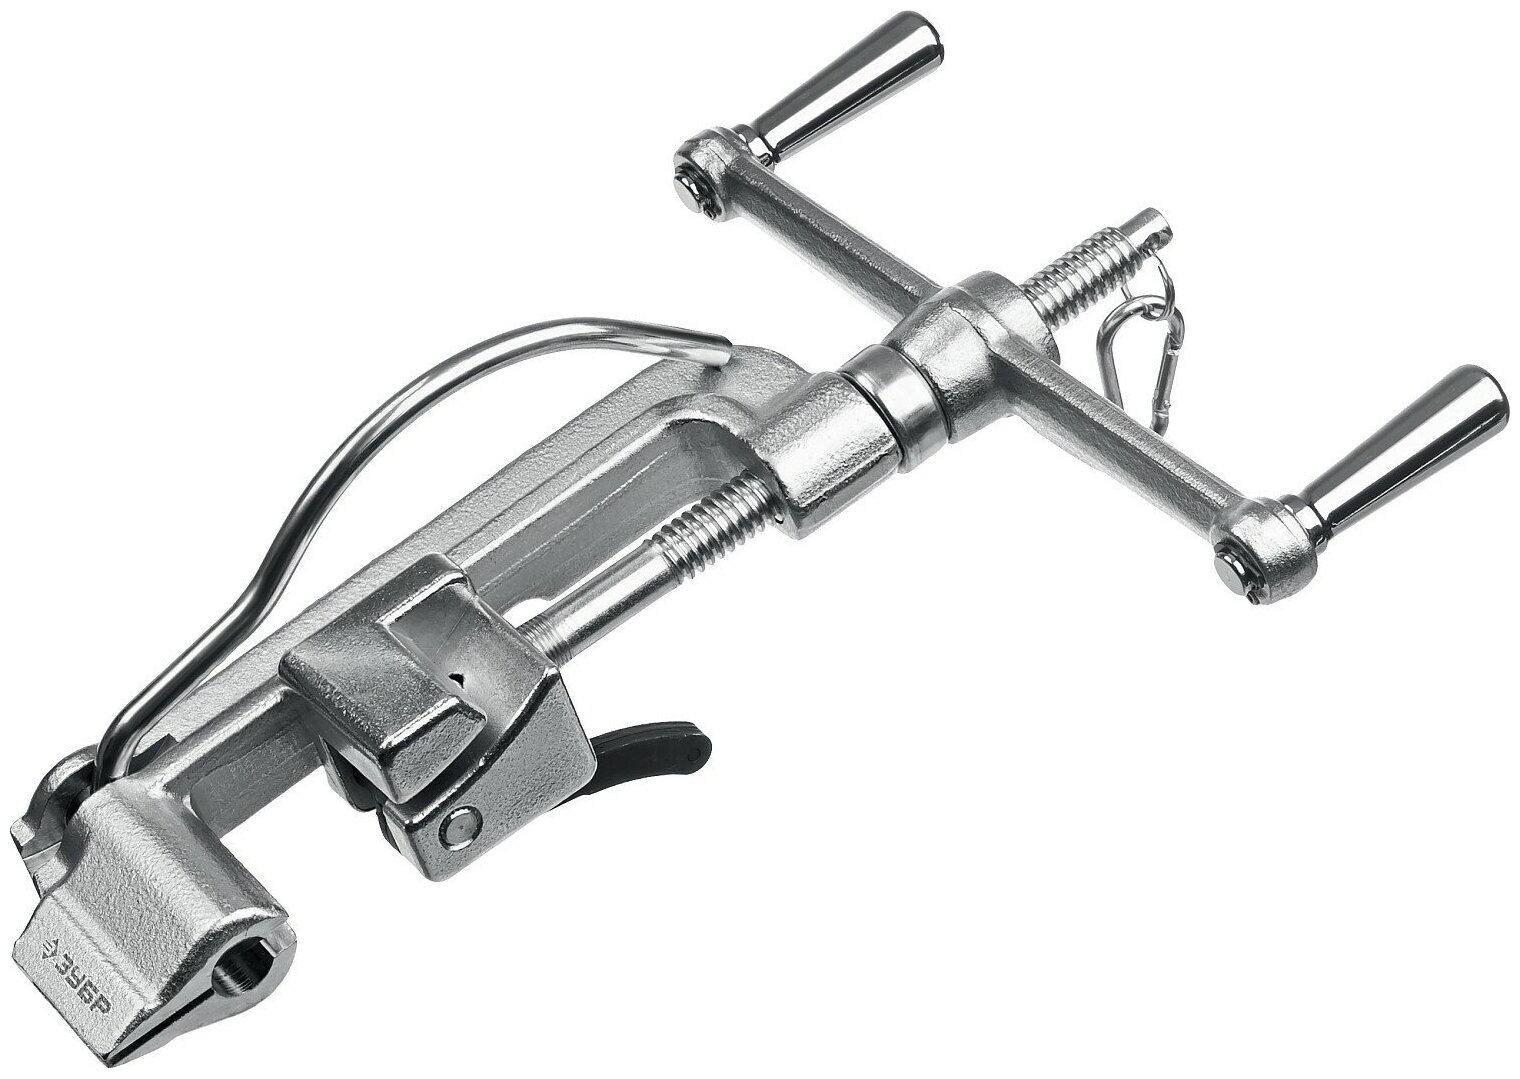 ЗУБР ИНВ-20 инструмент для натяжения и резки стальной ленты